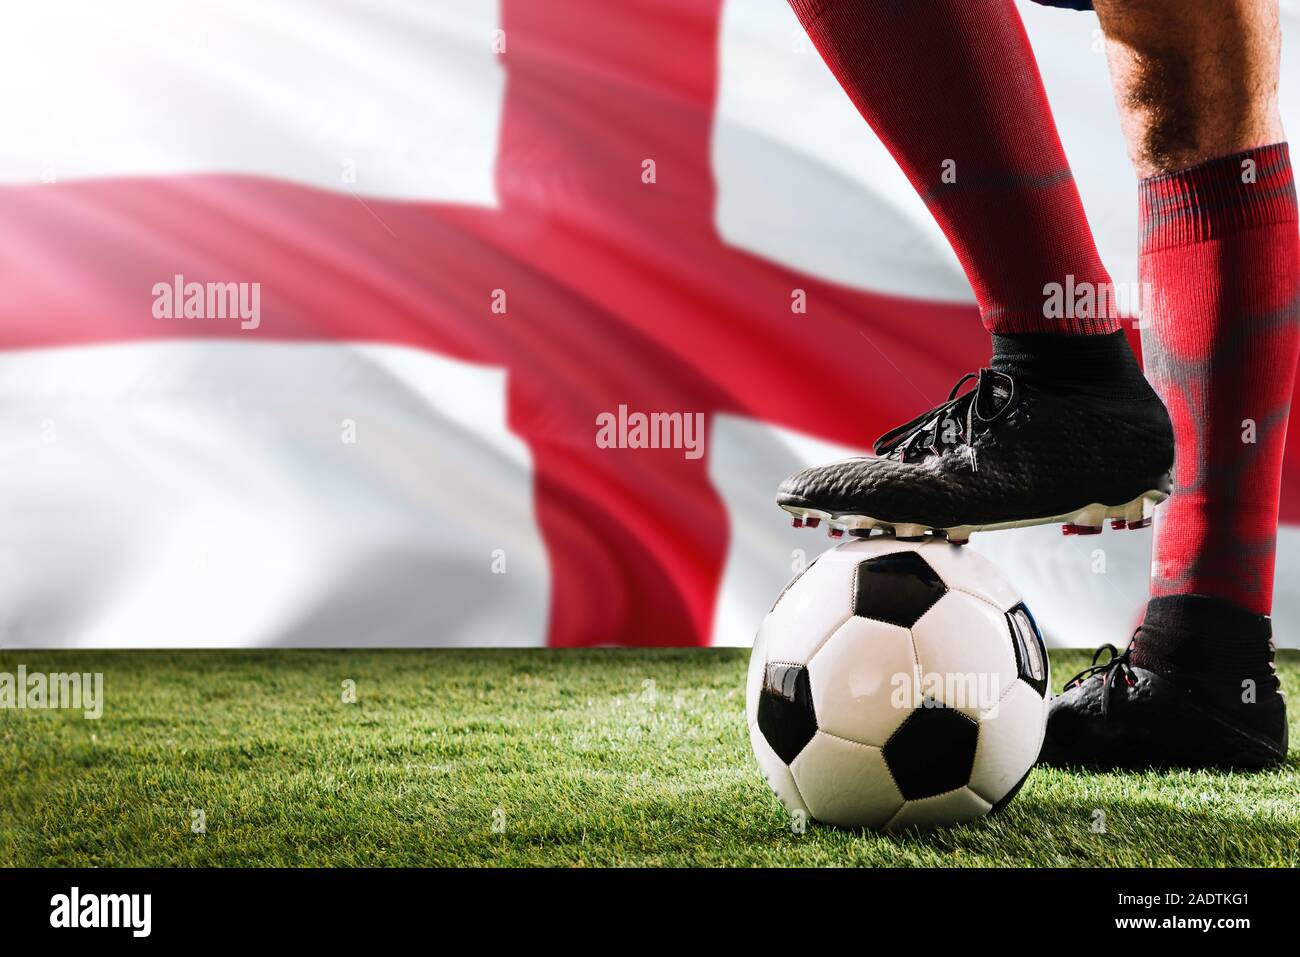 Nahaufnahme Beine von England Fußball Team Player in roten Socken, Schuhe  auf Fußball im Free Kick oder elfmeterpunkt Spielen auf Gras  Stockfotografie - Alamy